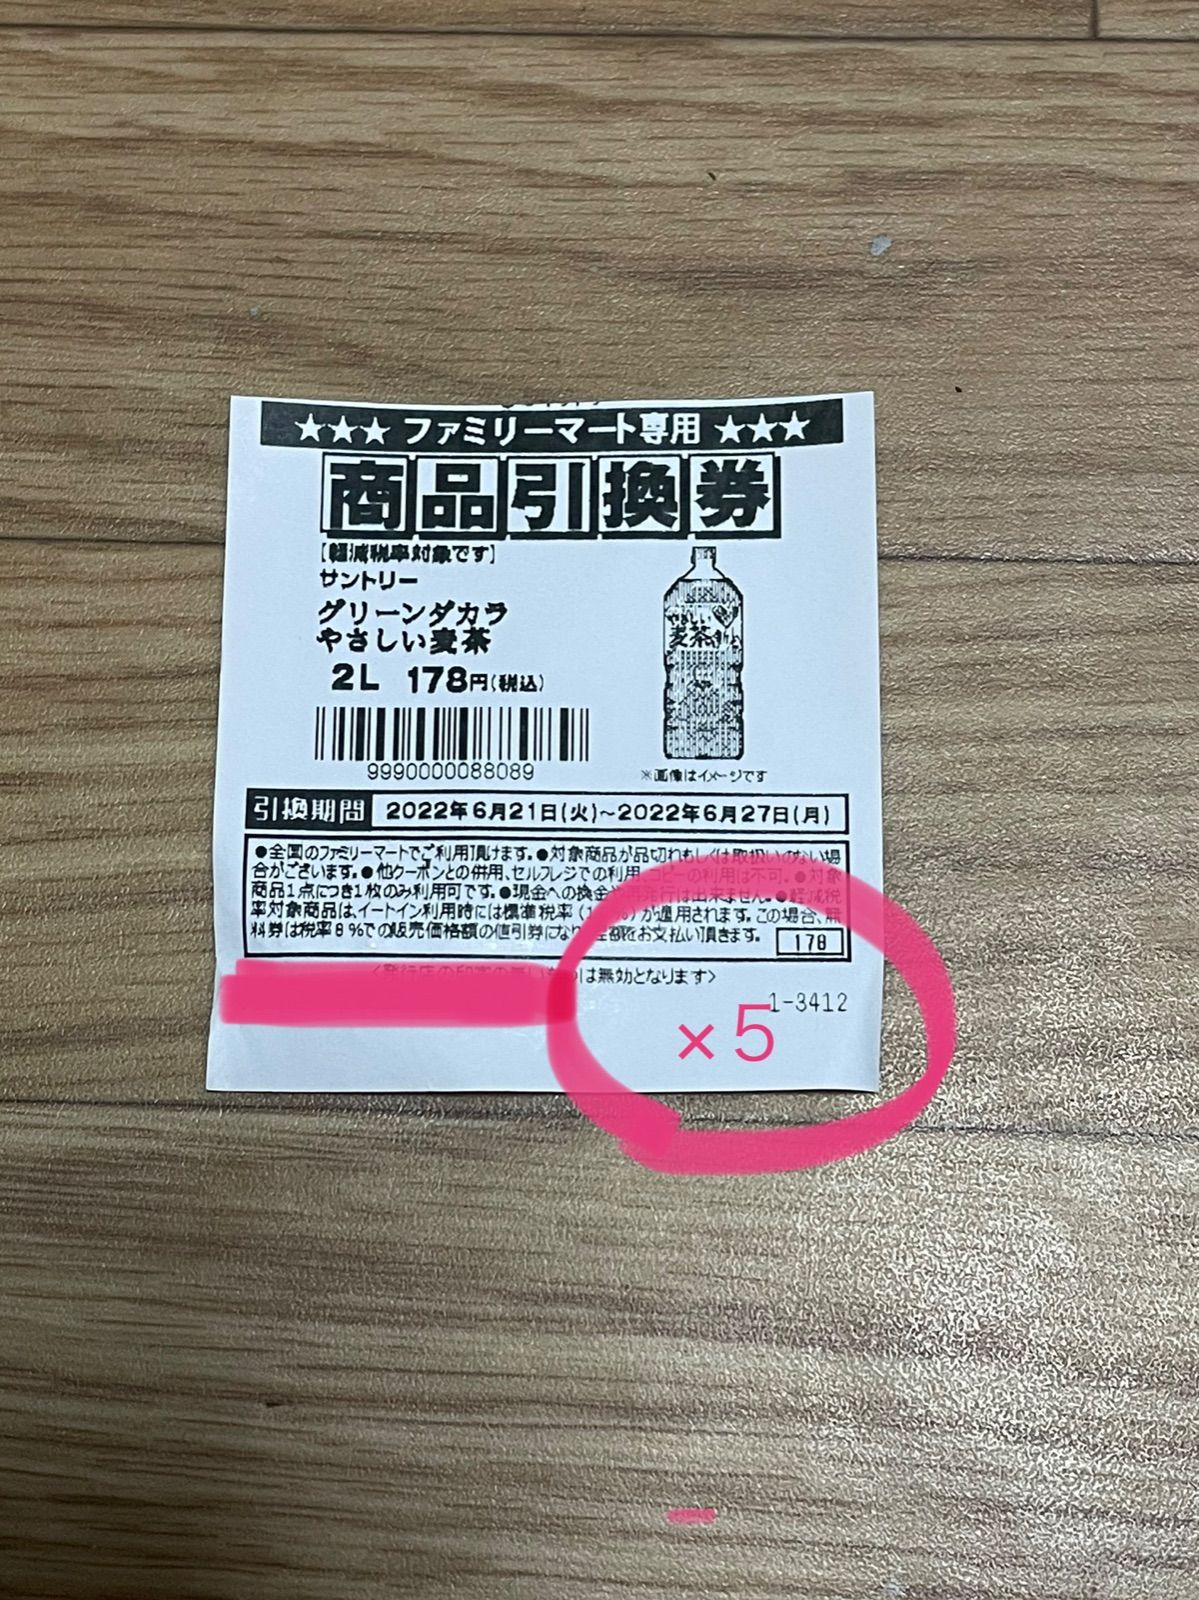 035 / 80枚 ファミリーマート 伊右衛門特茶 引換券フード/ドリンク券